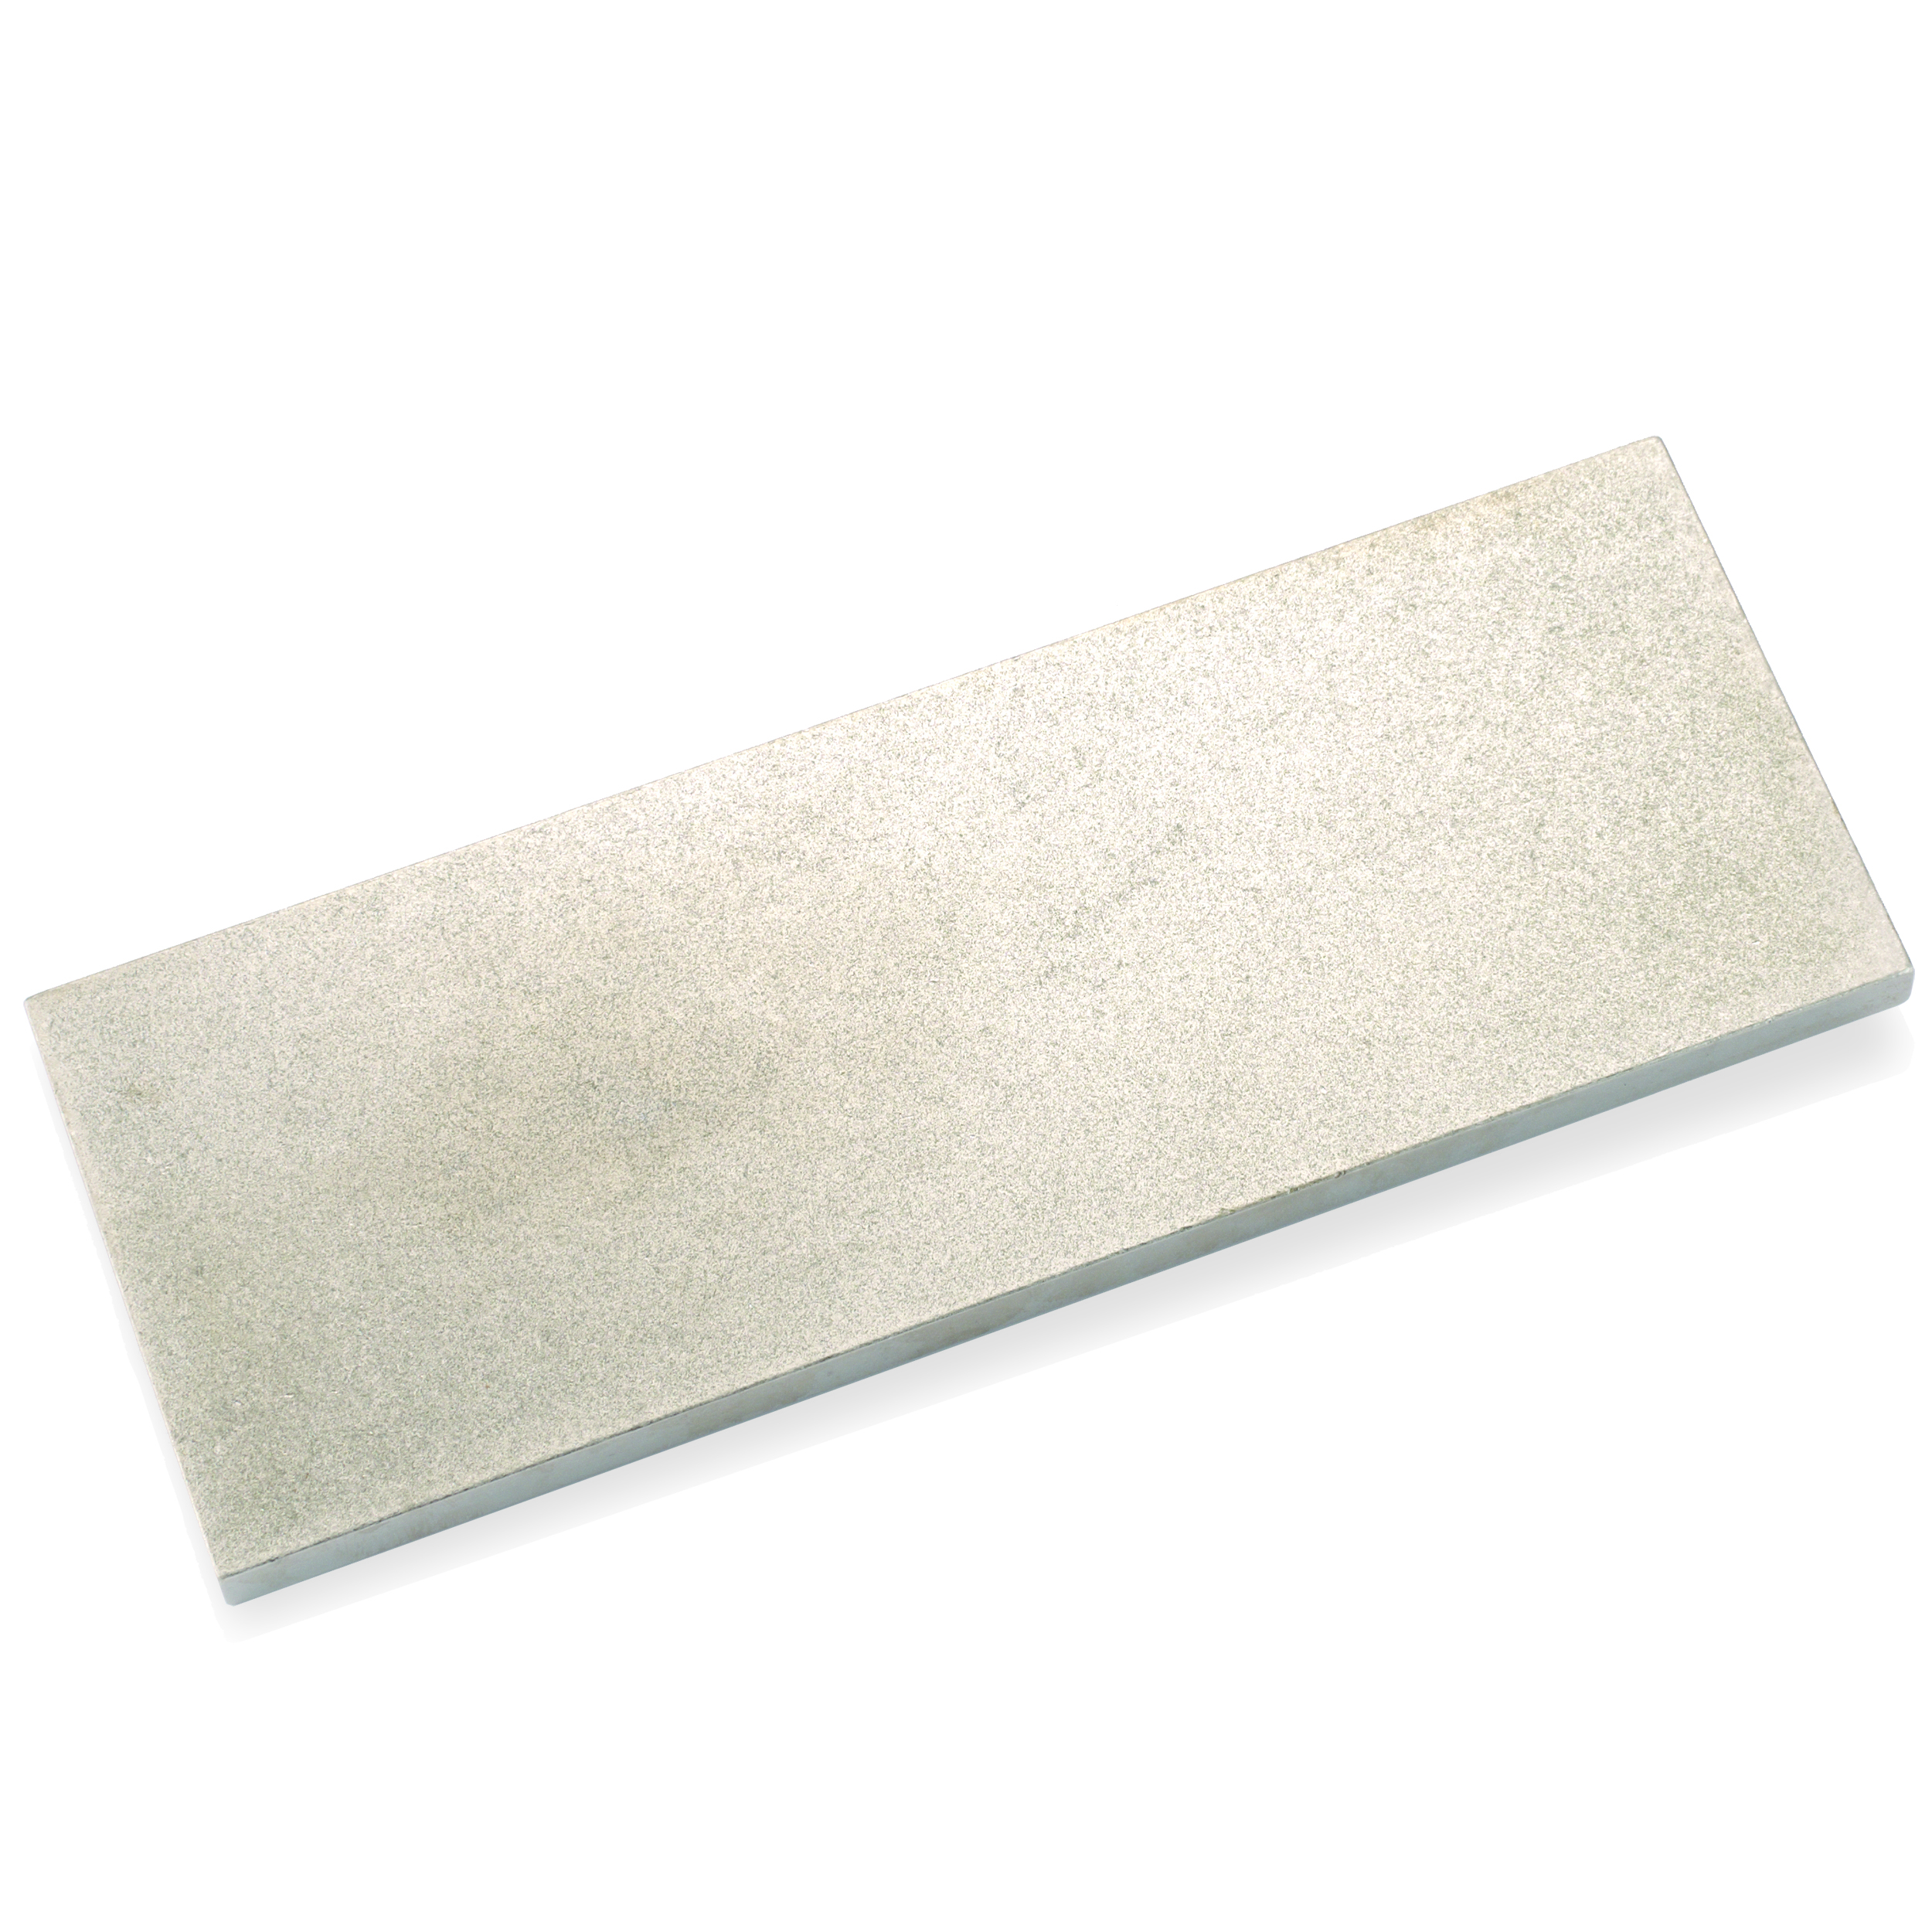 Dia-sharp, 8" X 3" Bench Stone, Extra-coarse